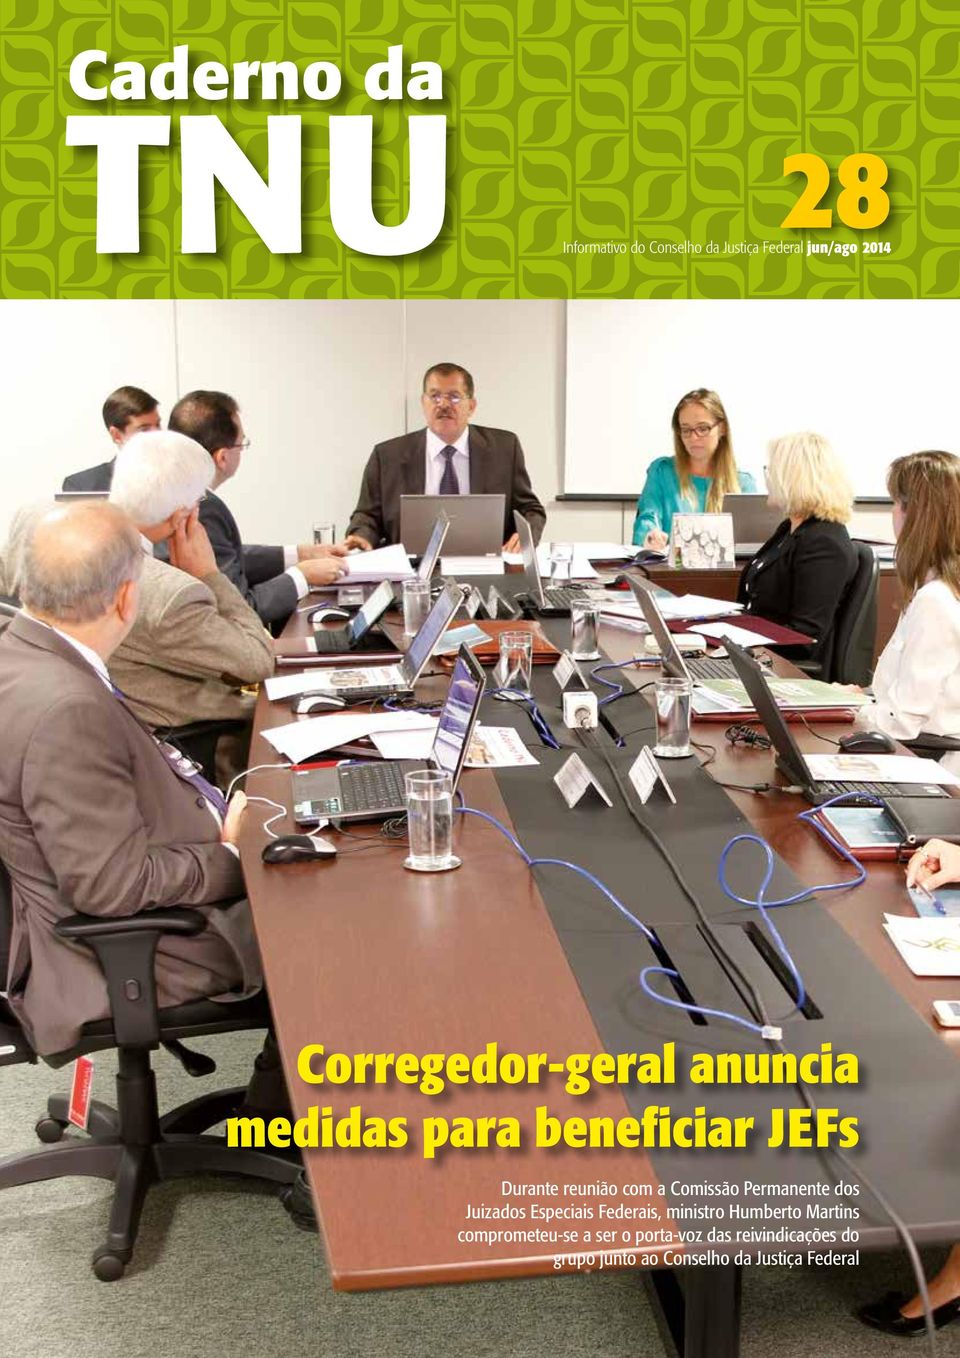 Comissão Permanente dos Juizados Especiais Federais, ministro Humberto Martins